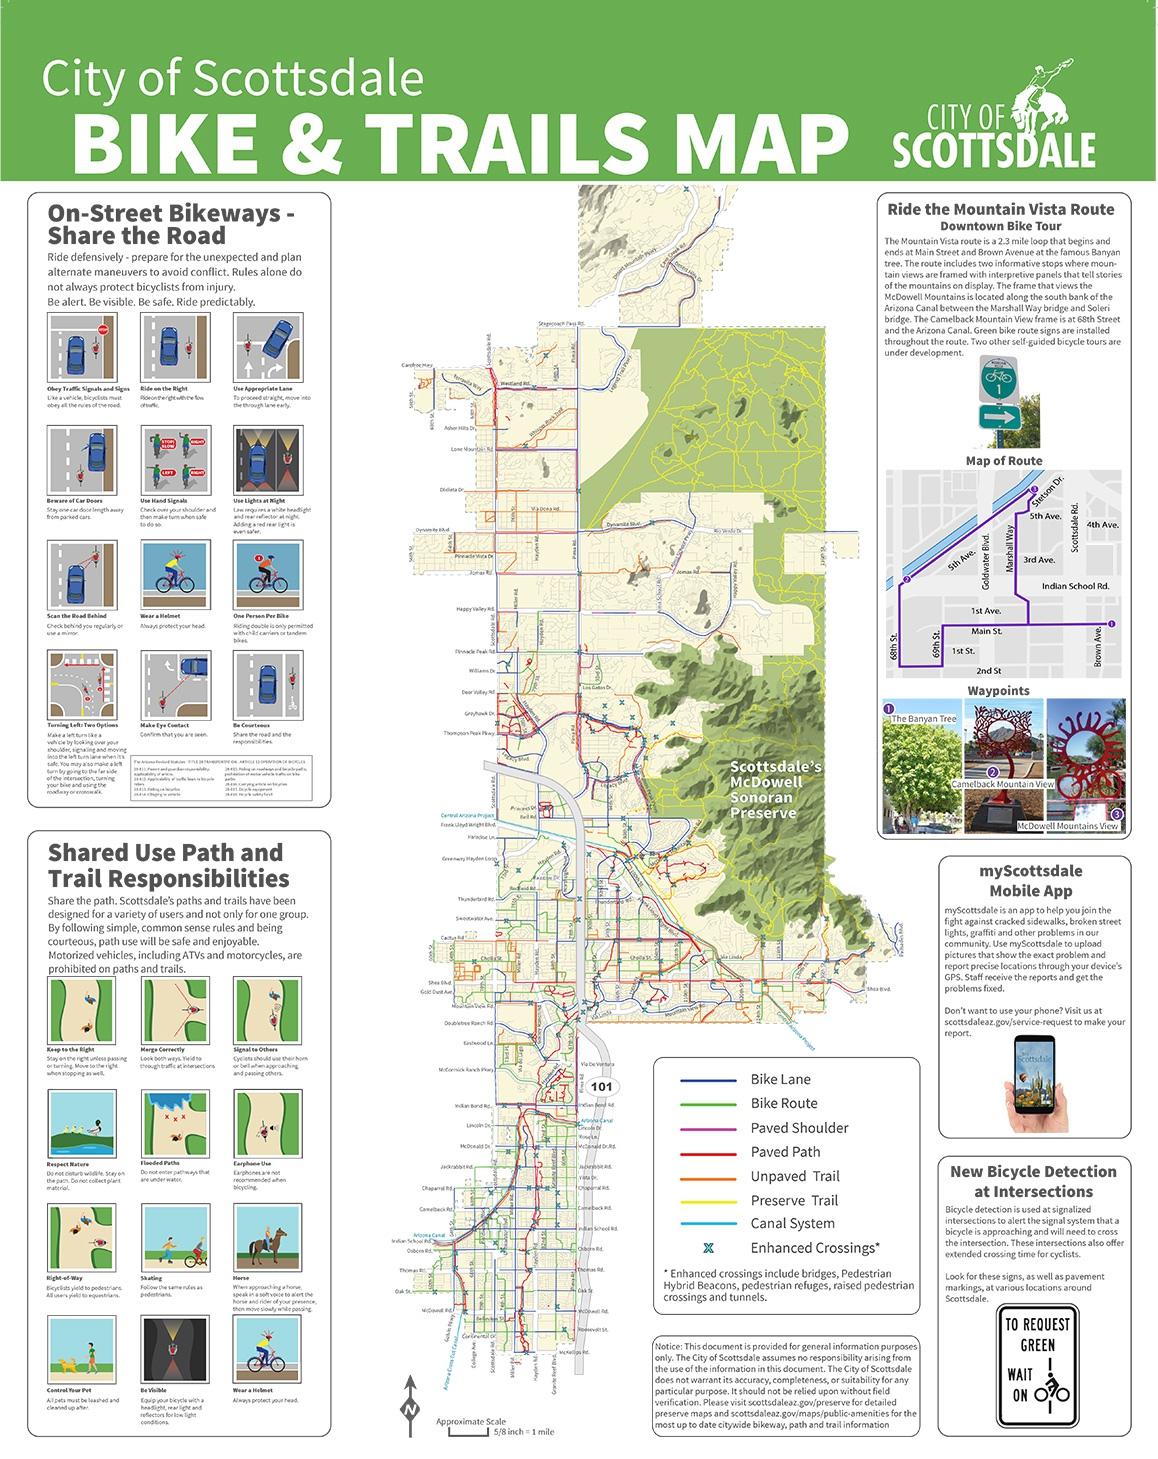 Phoenix Bike Lane Map